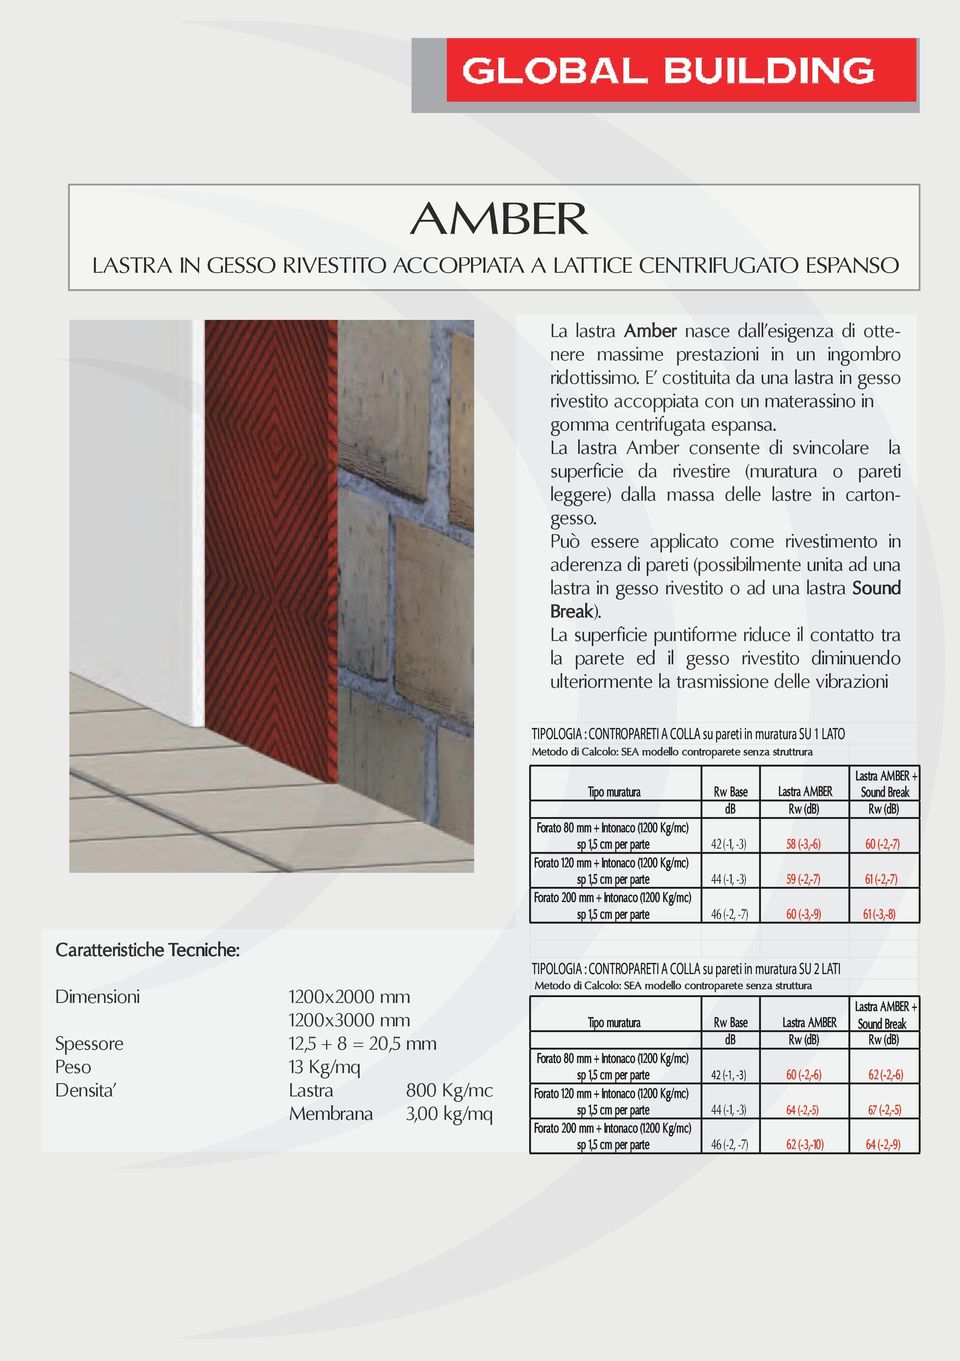 La lastra Amber consente di svincolare la superficie da rivestire (muratura o pareti leggere) dalla massa delle lastre in cartongesso.